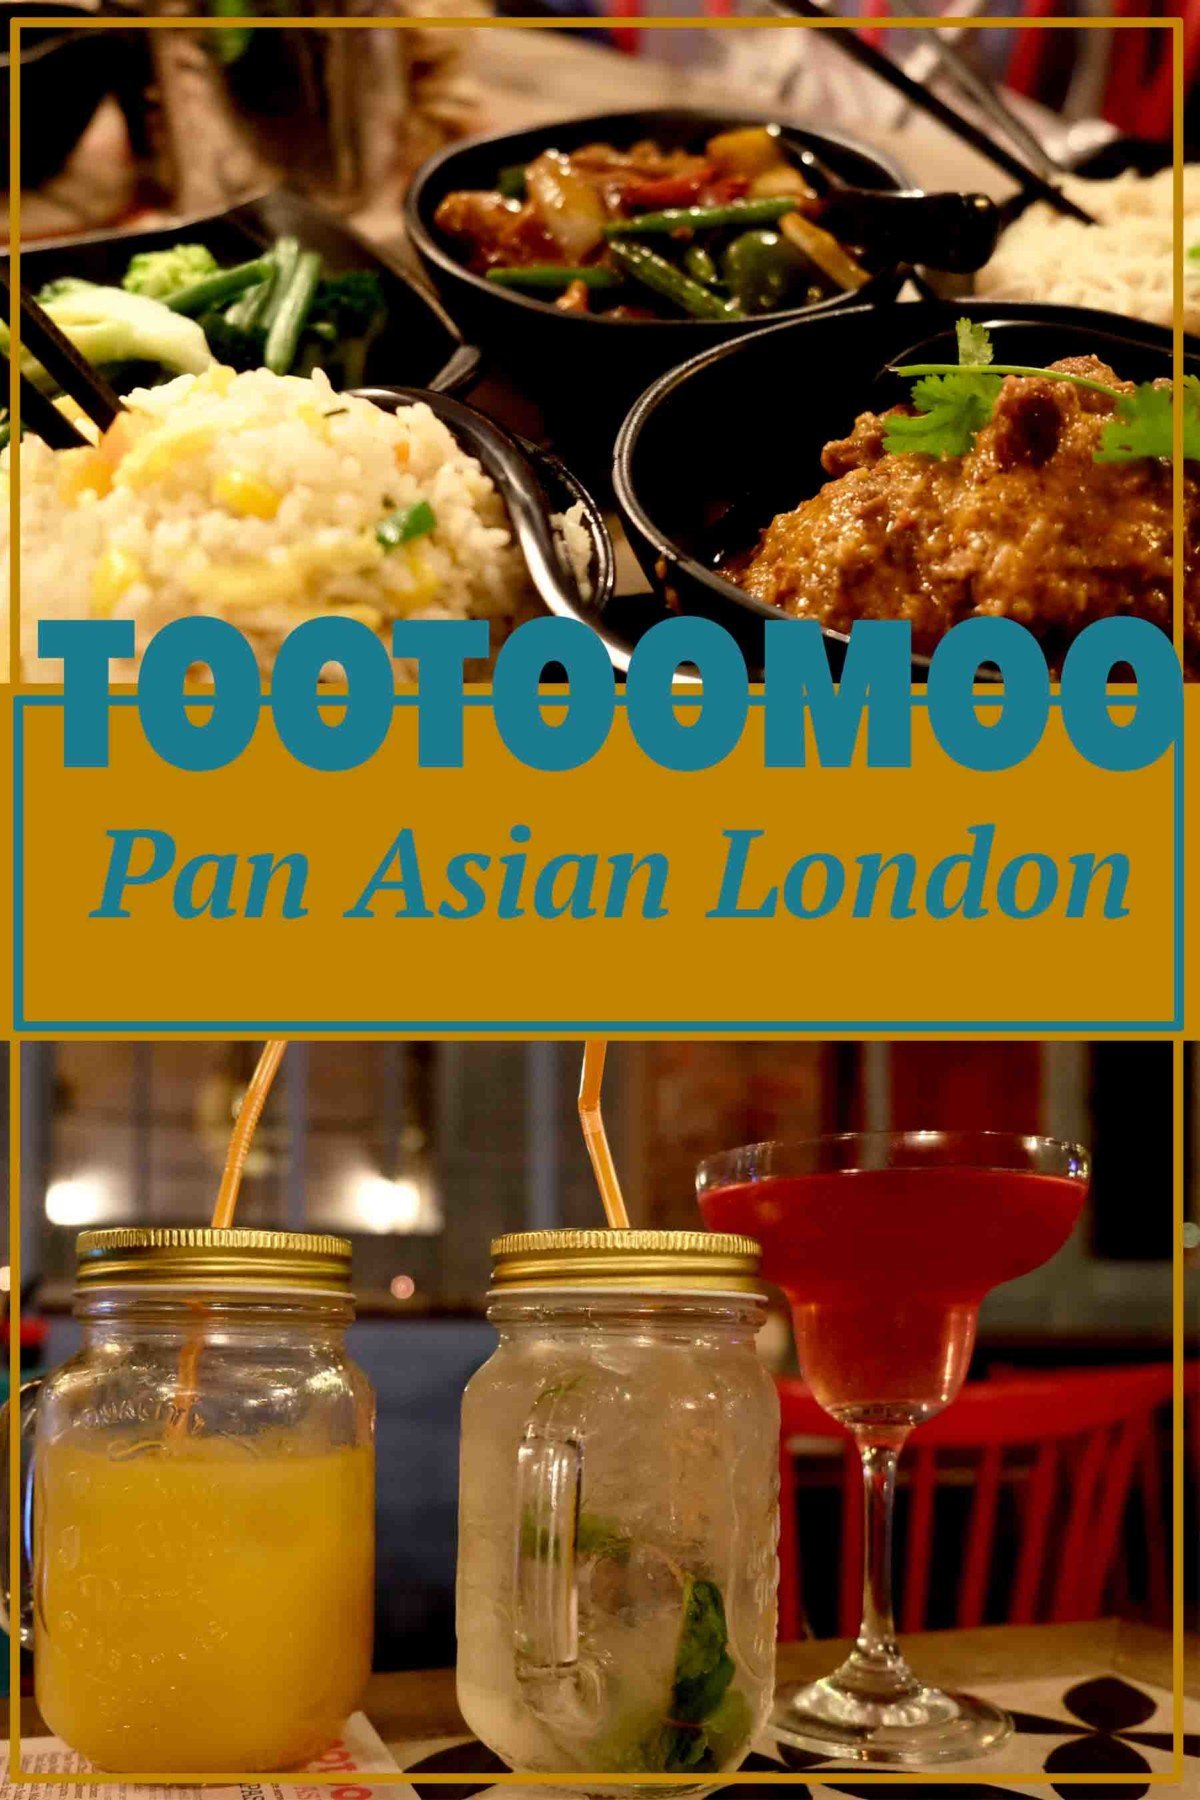 Tootoomoo Pan Asian Tapas Restaurant London